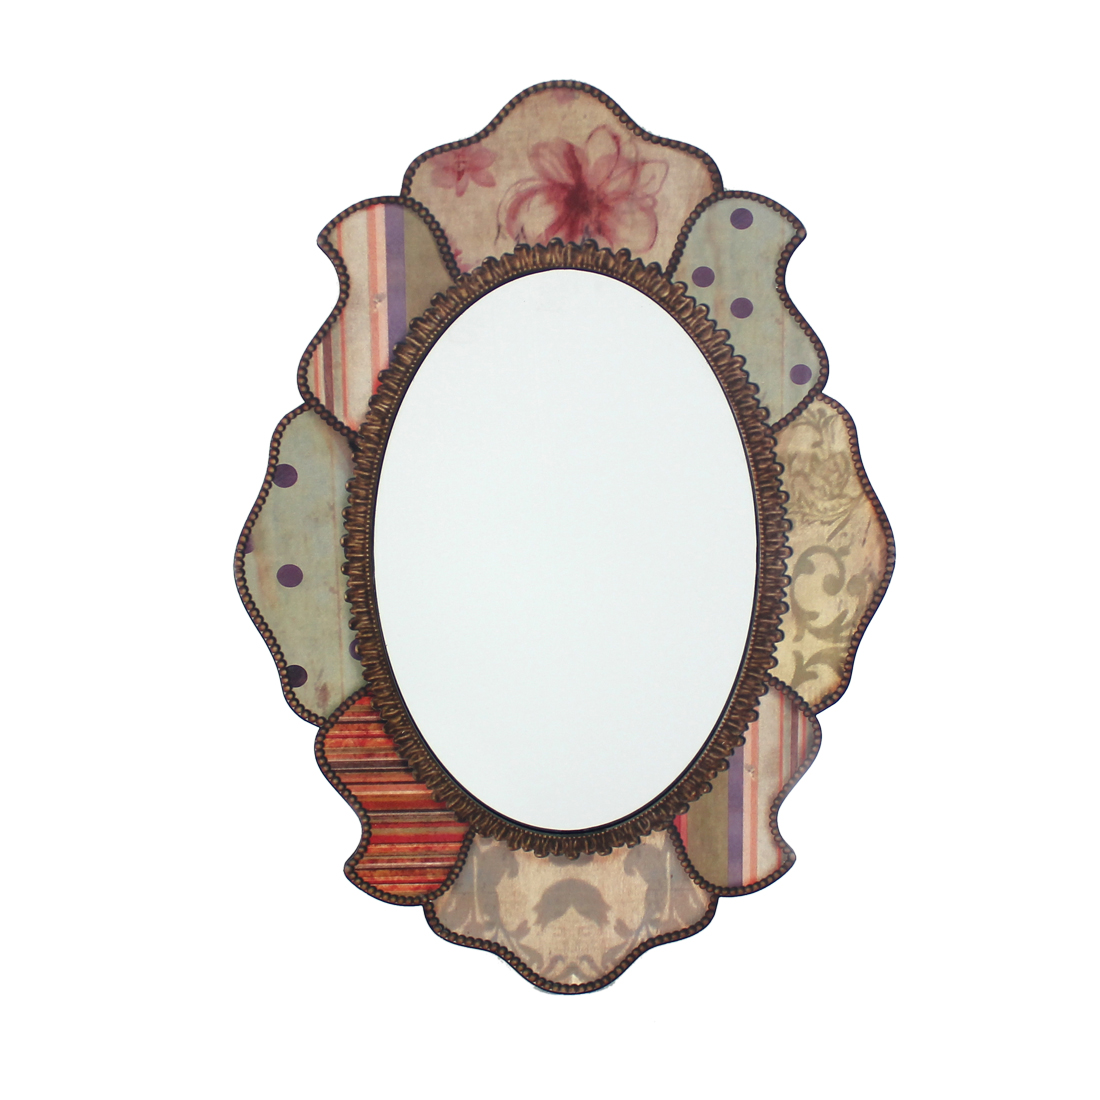 21.65" x 31.5" Multi-Color, Retro Style, Decorative Wooden - Wall Mirror